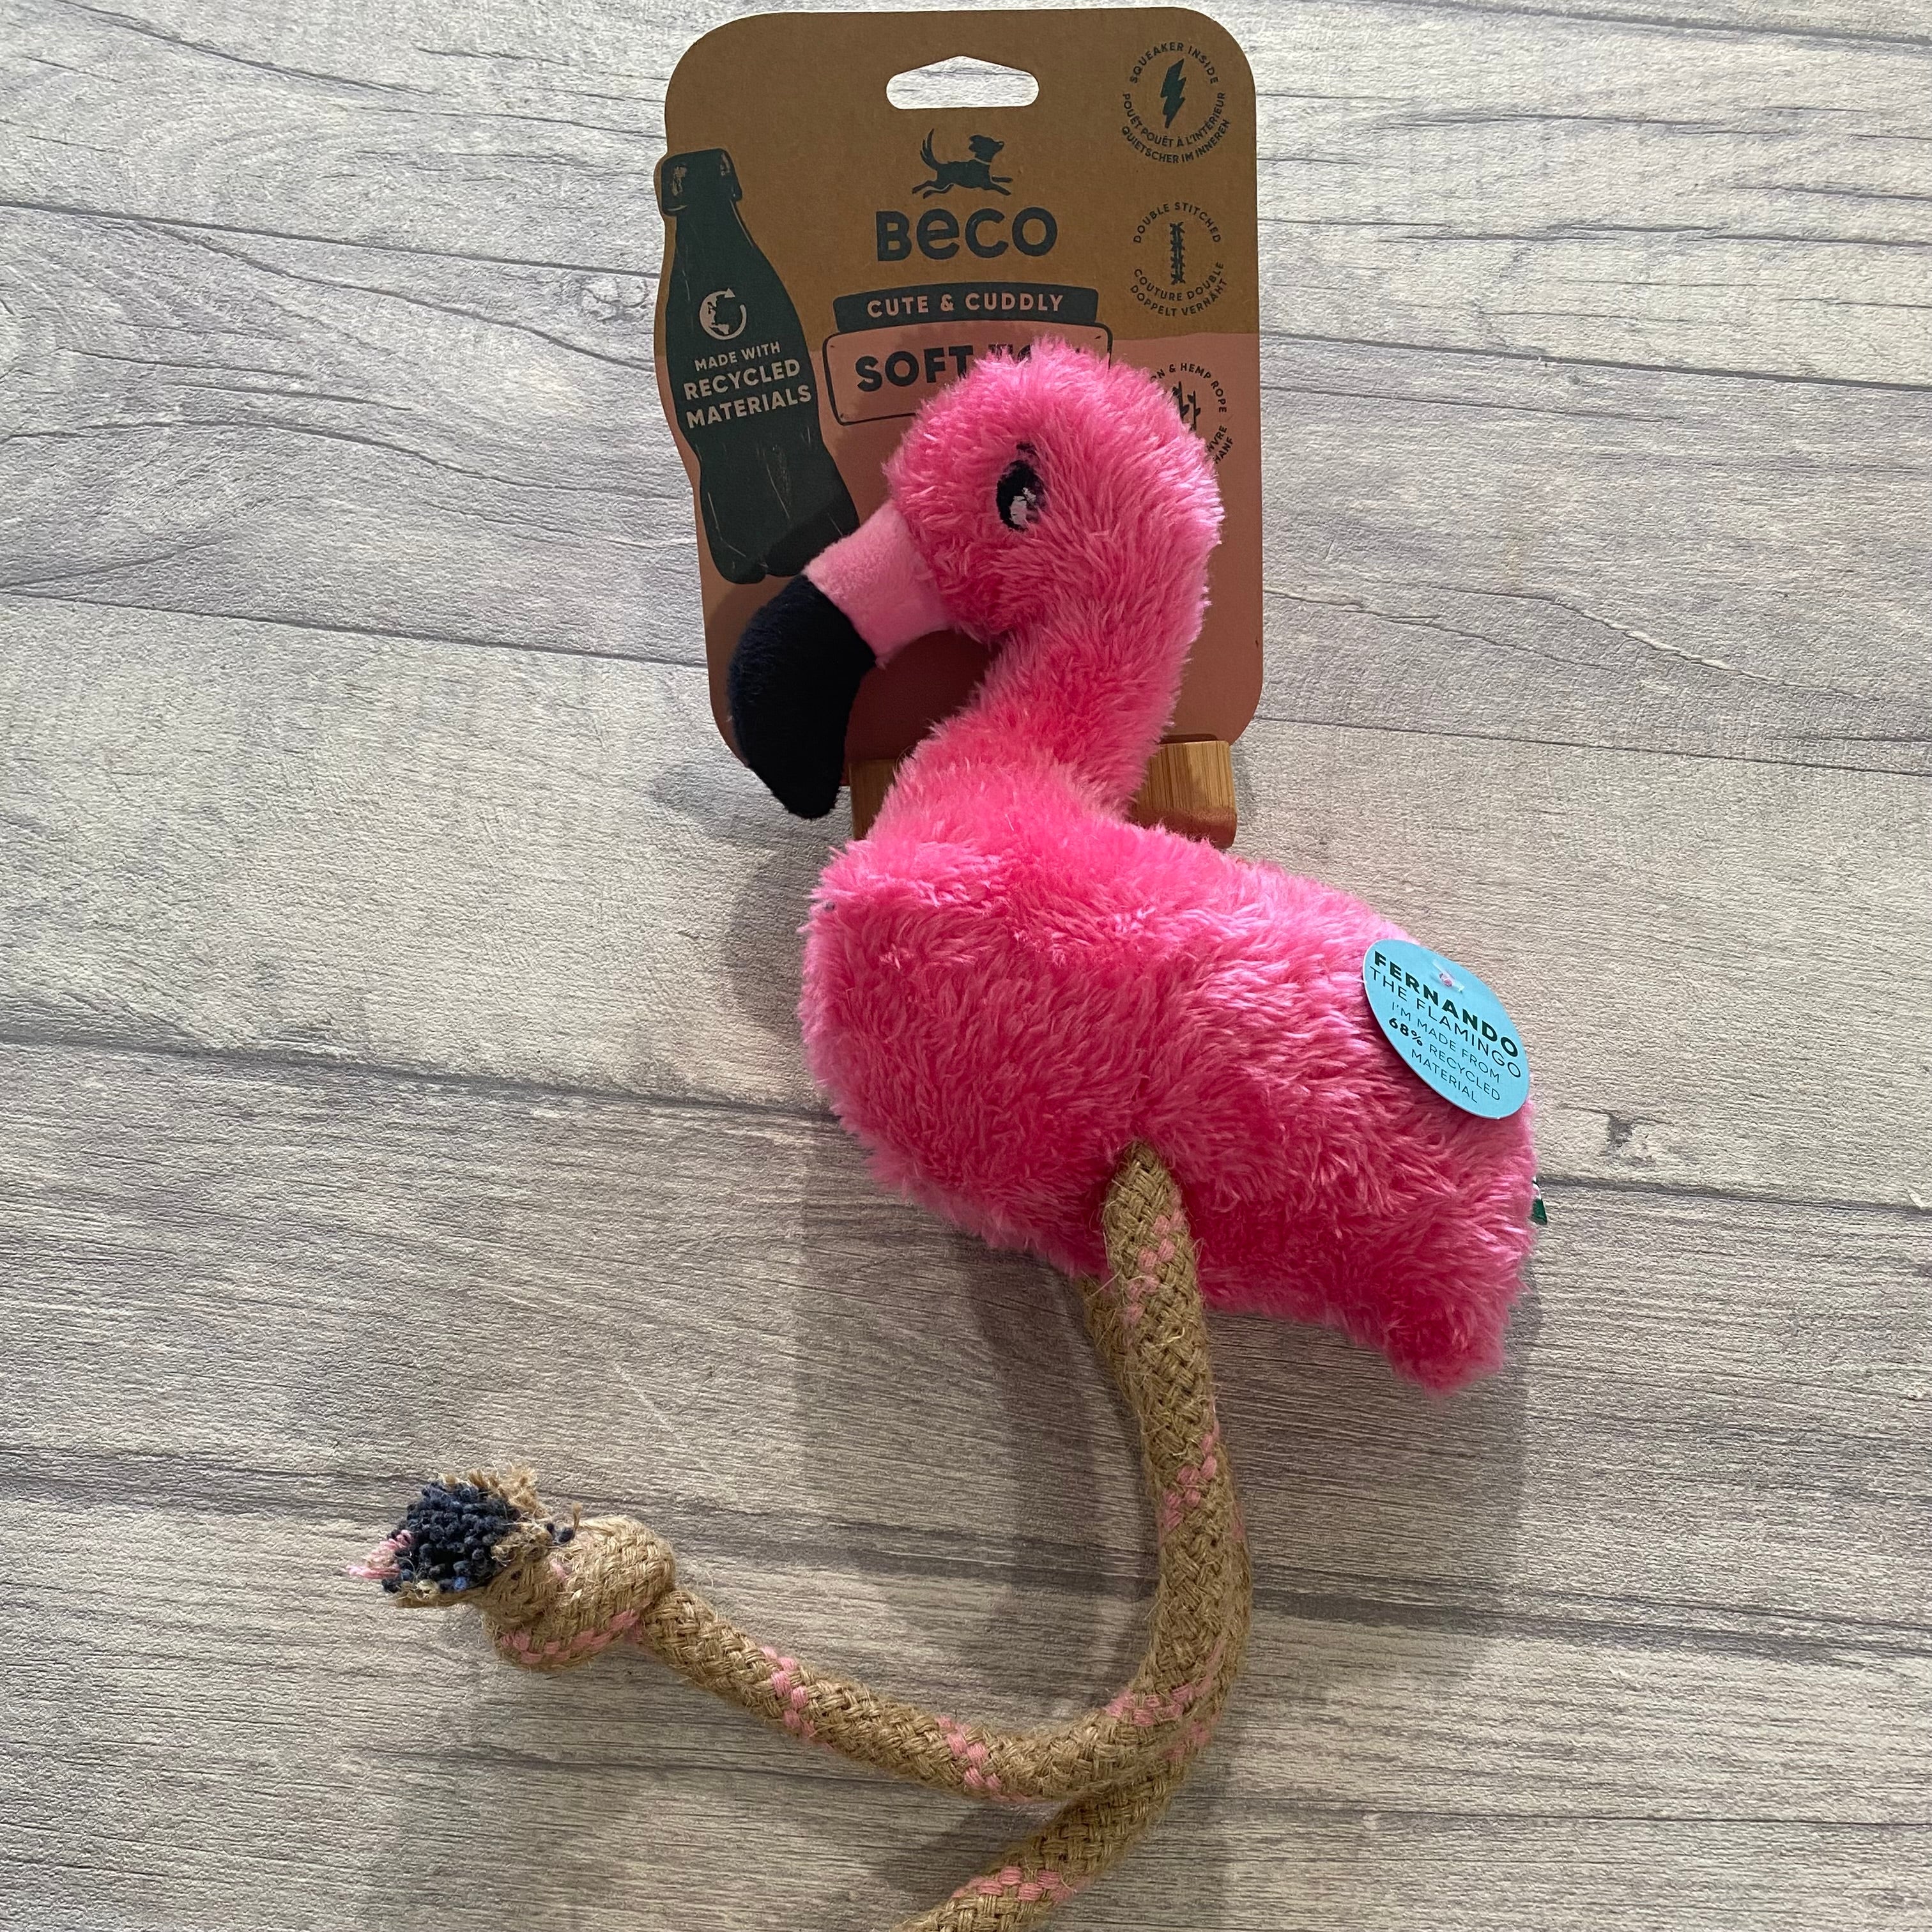 Beco 'Cute & Cuddly' Fernando the Flamingo dog toy